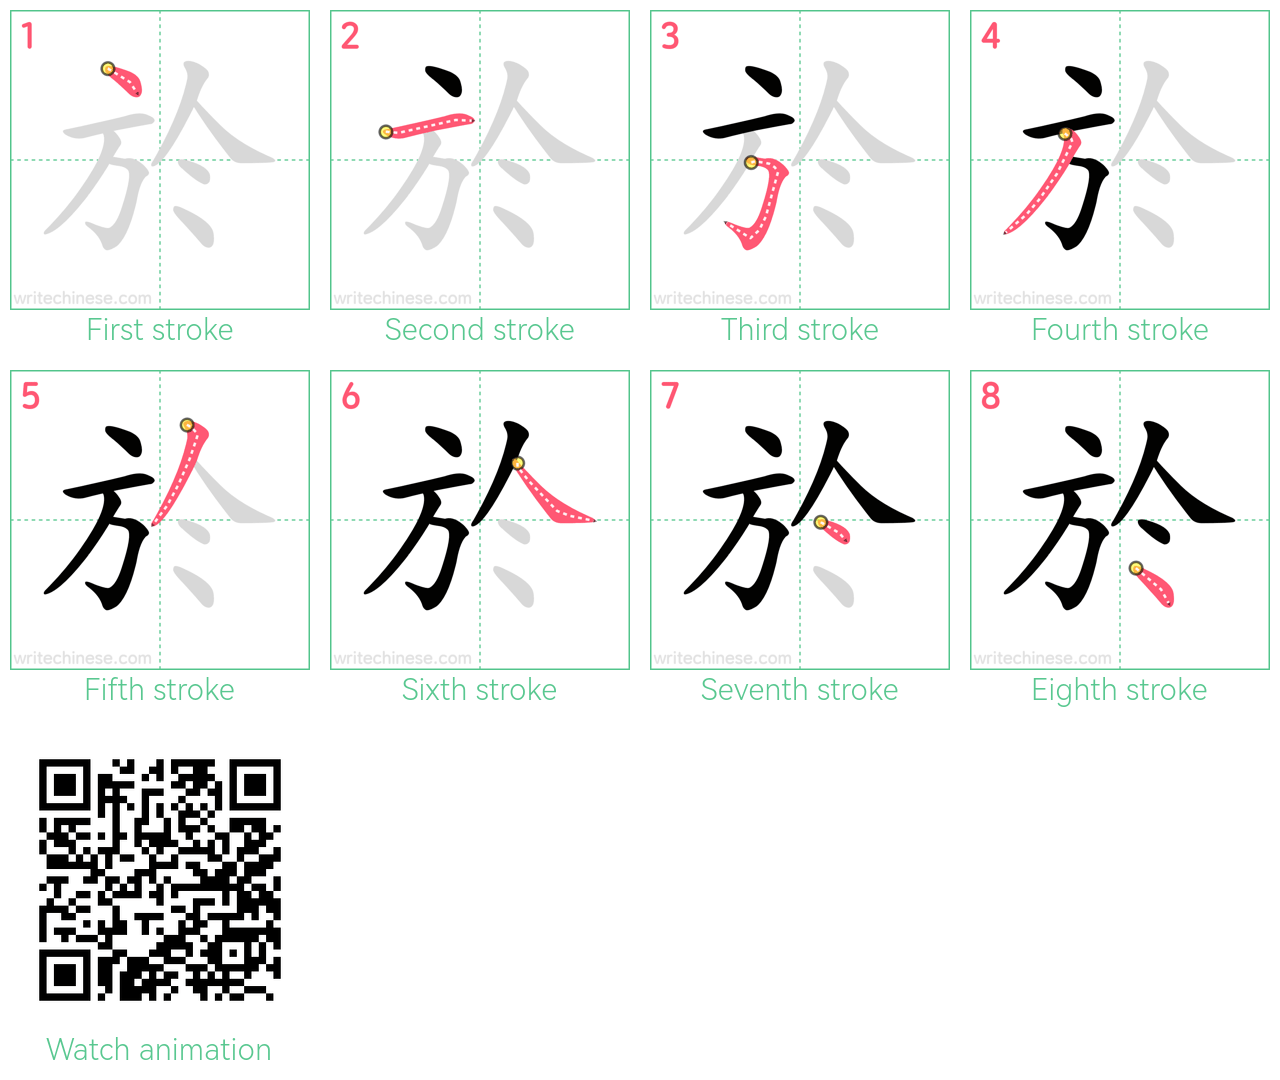 於 step-by-step stroke order diagrams